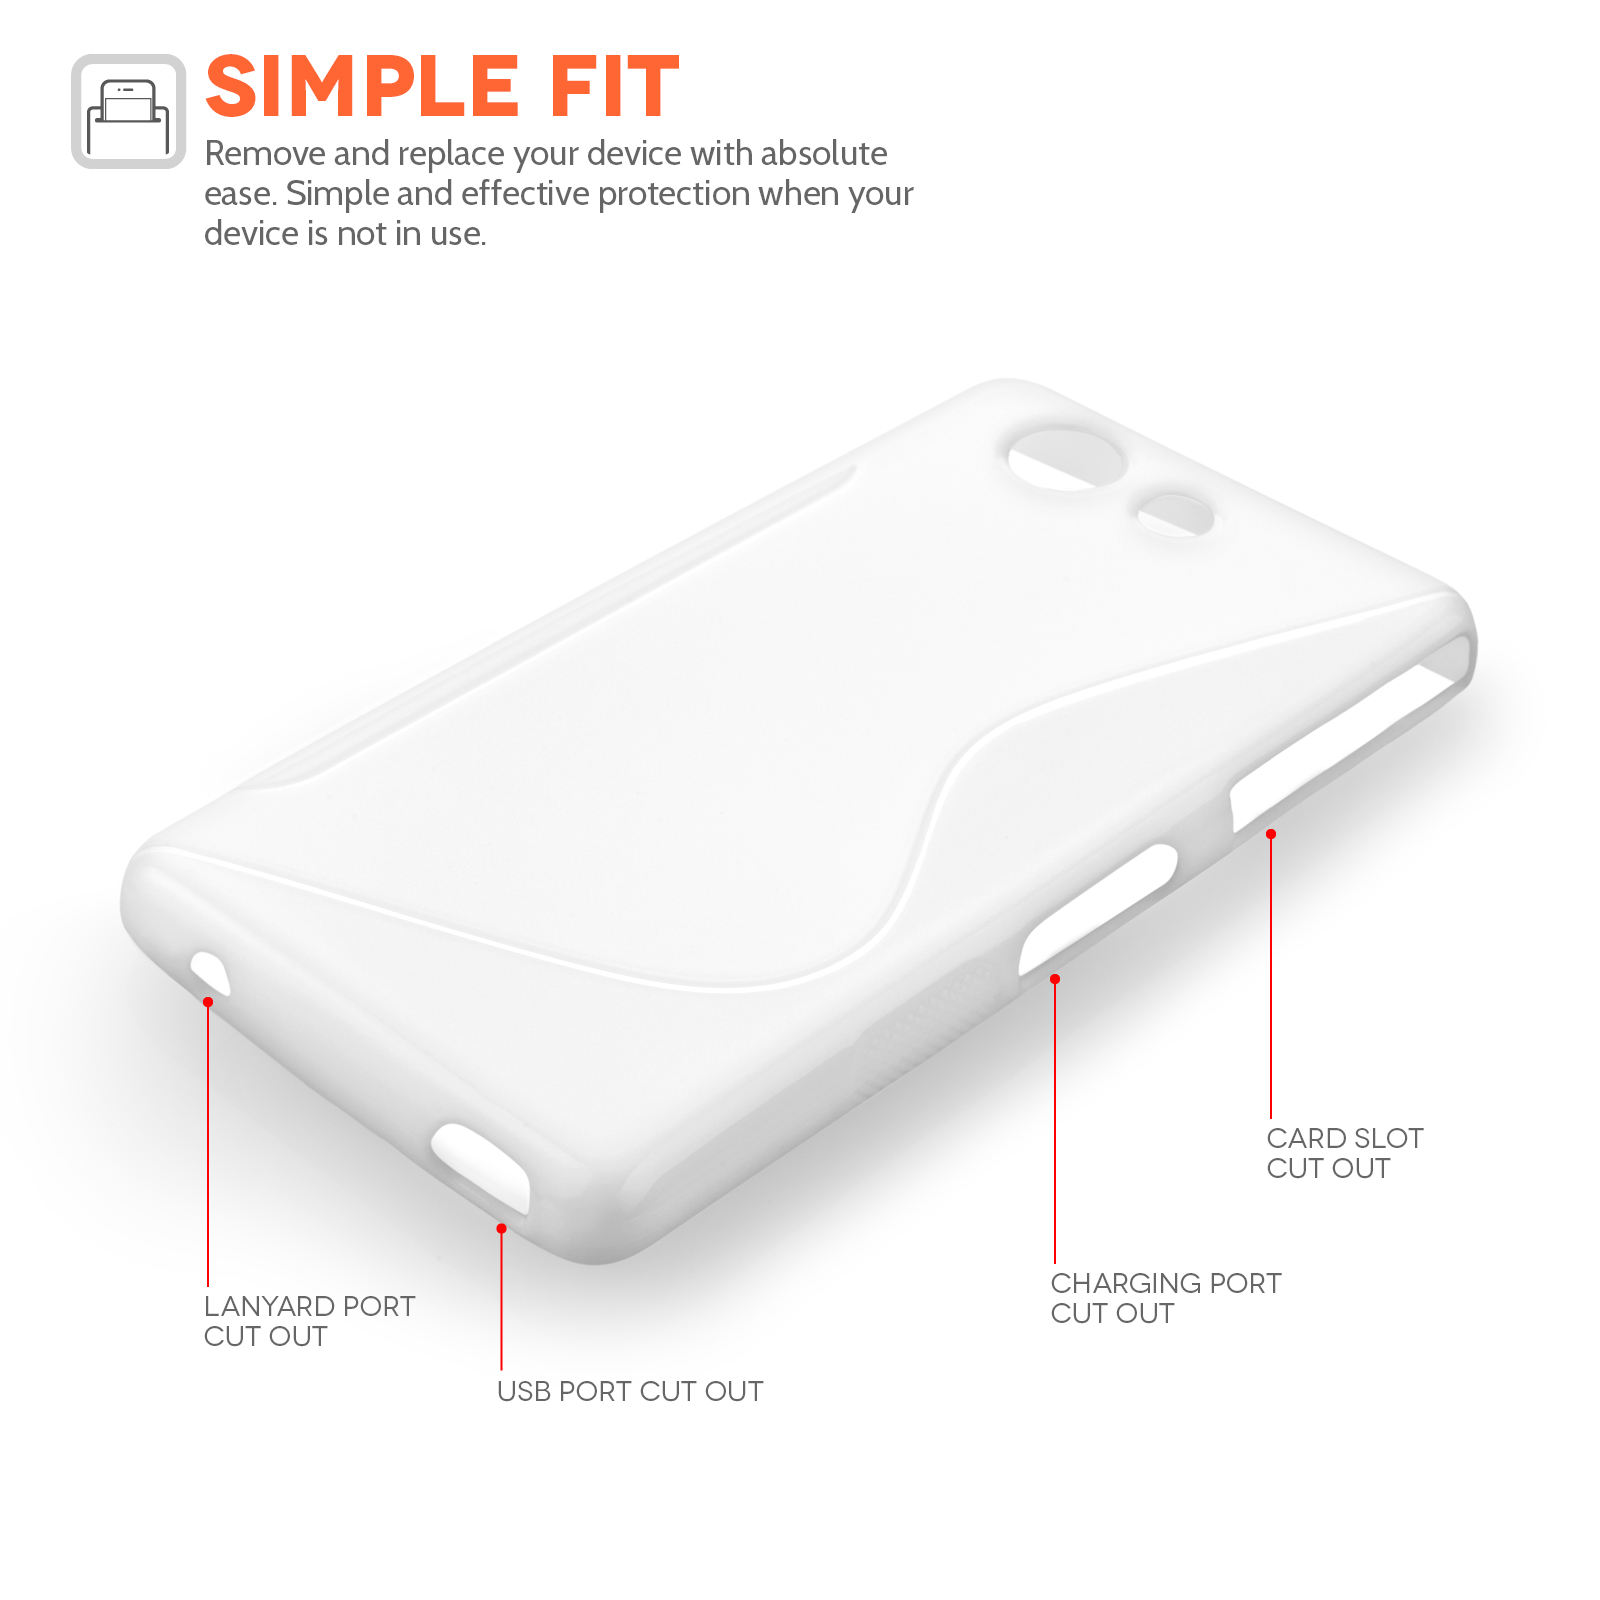 Caseflex Sony Xperia Z4 Compact Silicone Gel S-Line Case - White